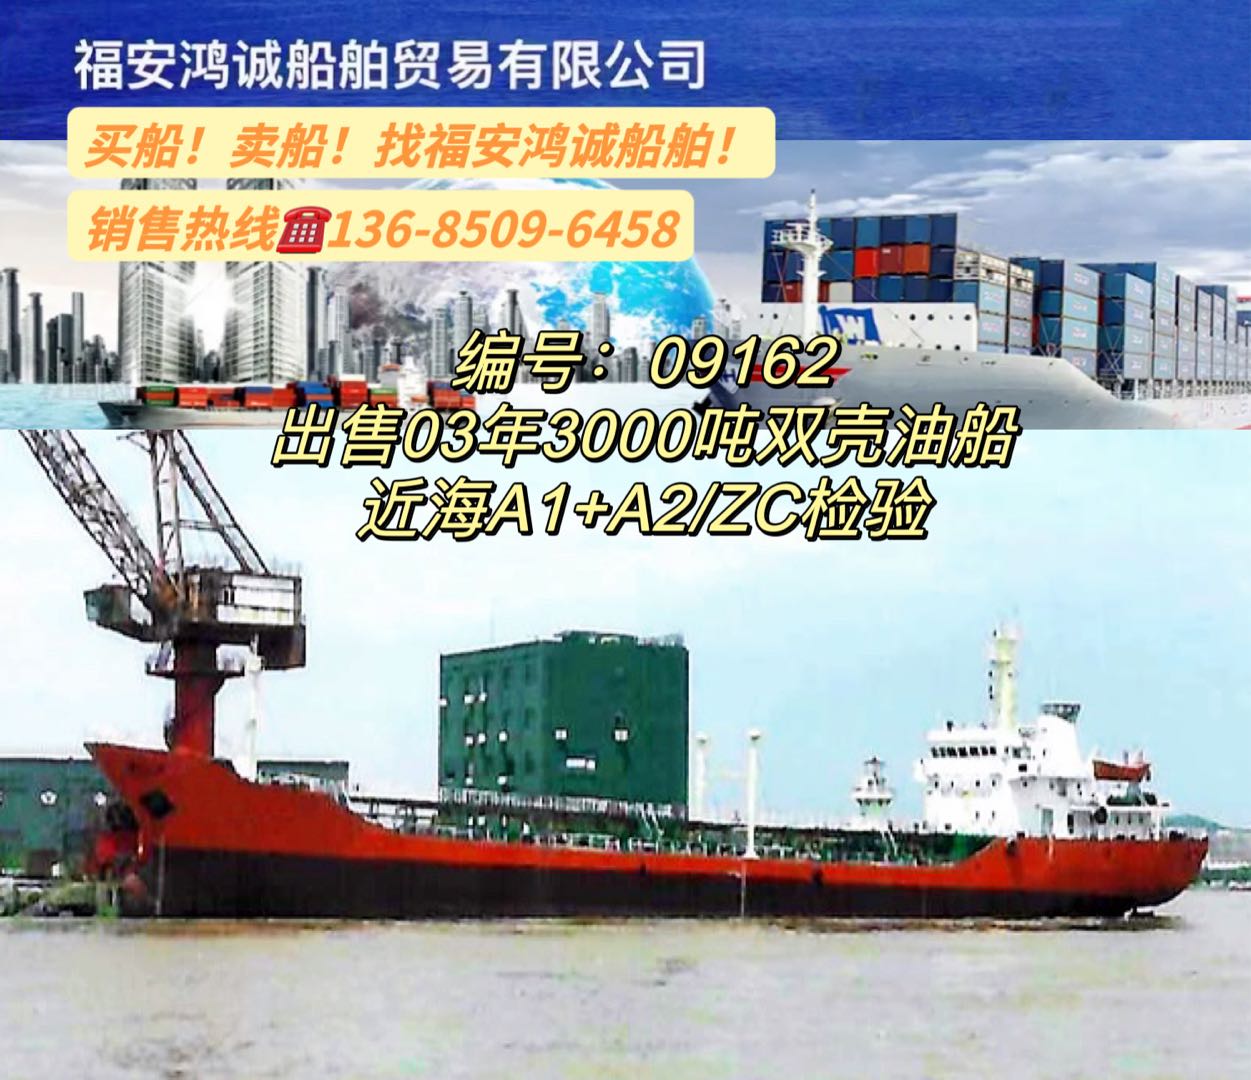 出售03年3000吨油船